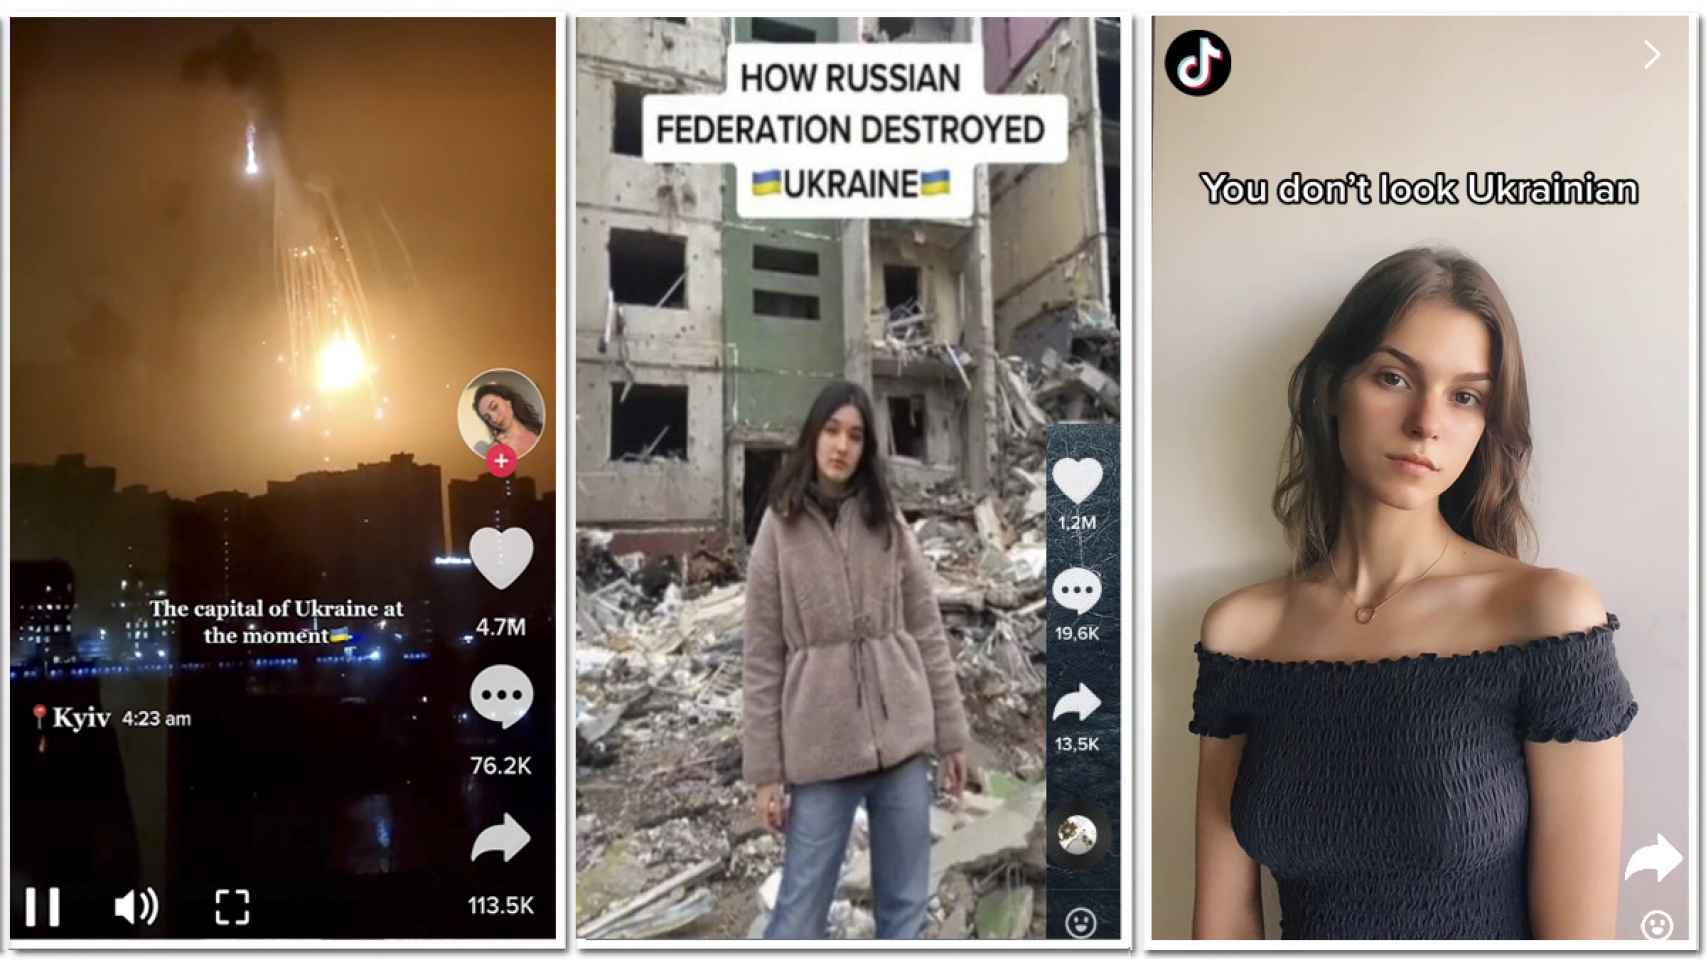 Pantallazos de imágenes publicadas en TikTok relacionadas con la guerra en Ucrania.